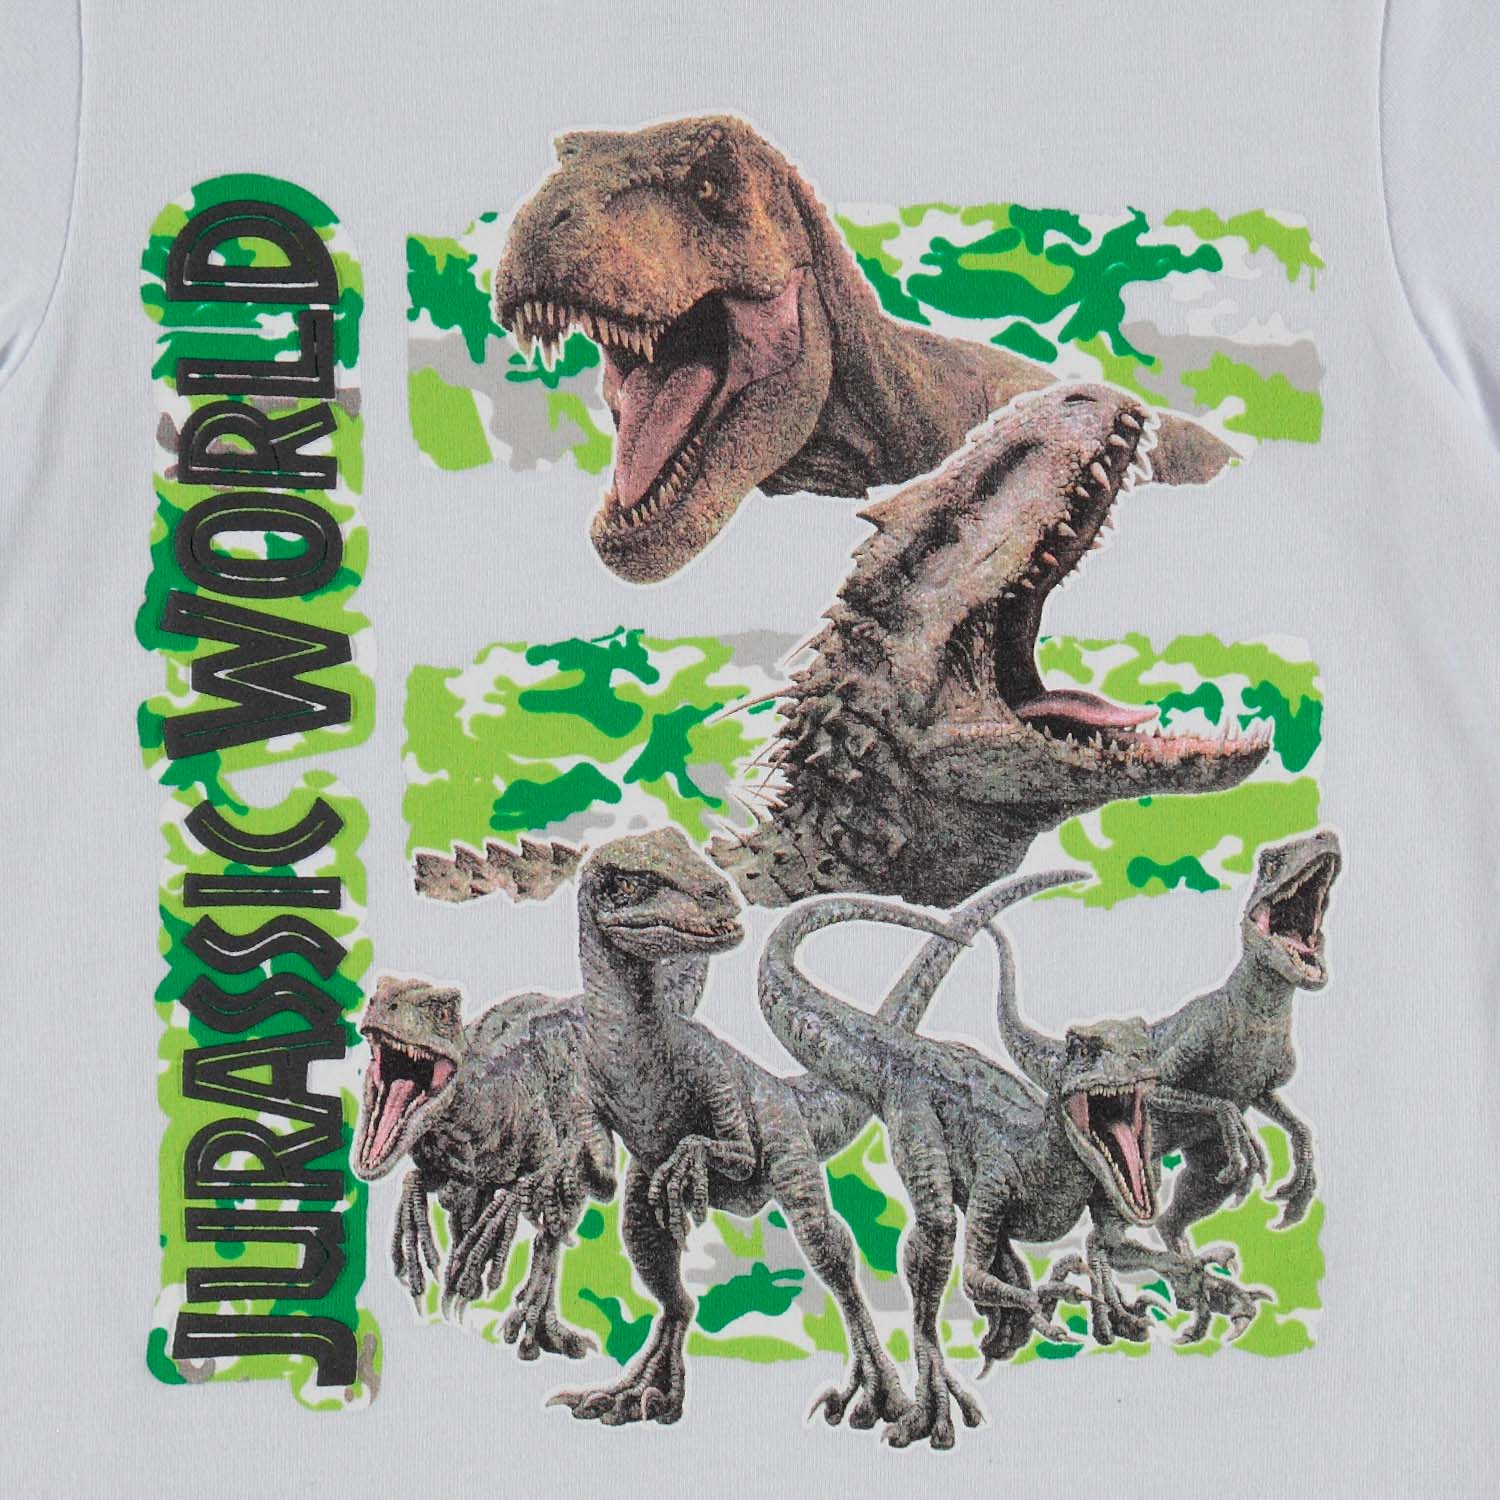 Canciones infantiles Quizás brillante Camiseta de niño, manga corta blanca de Jurassic World